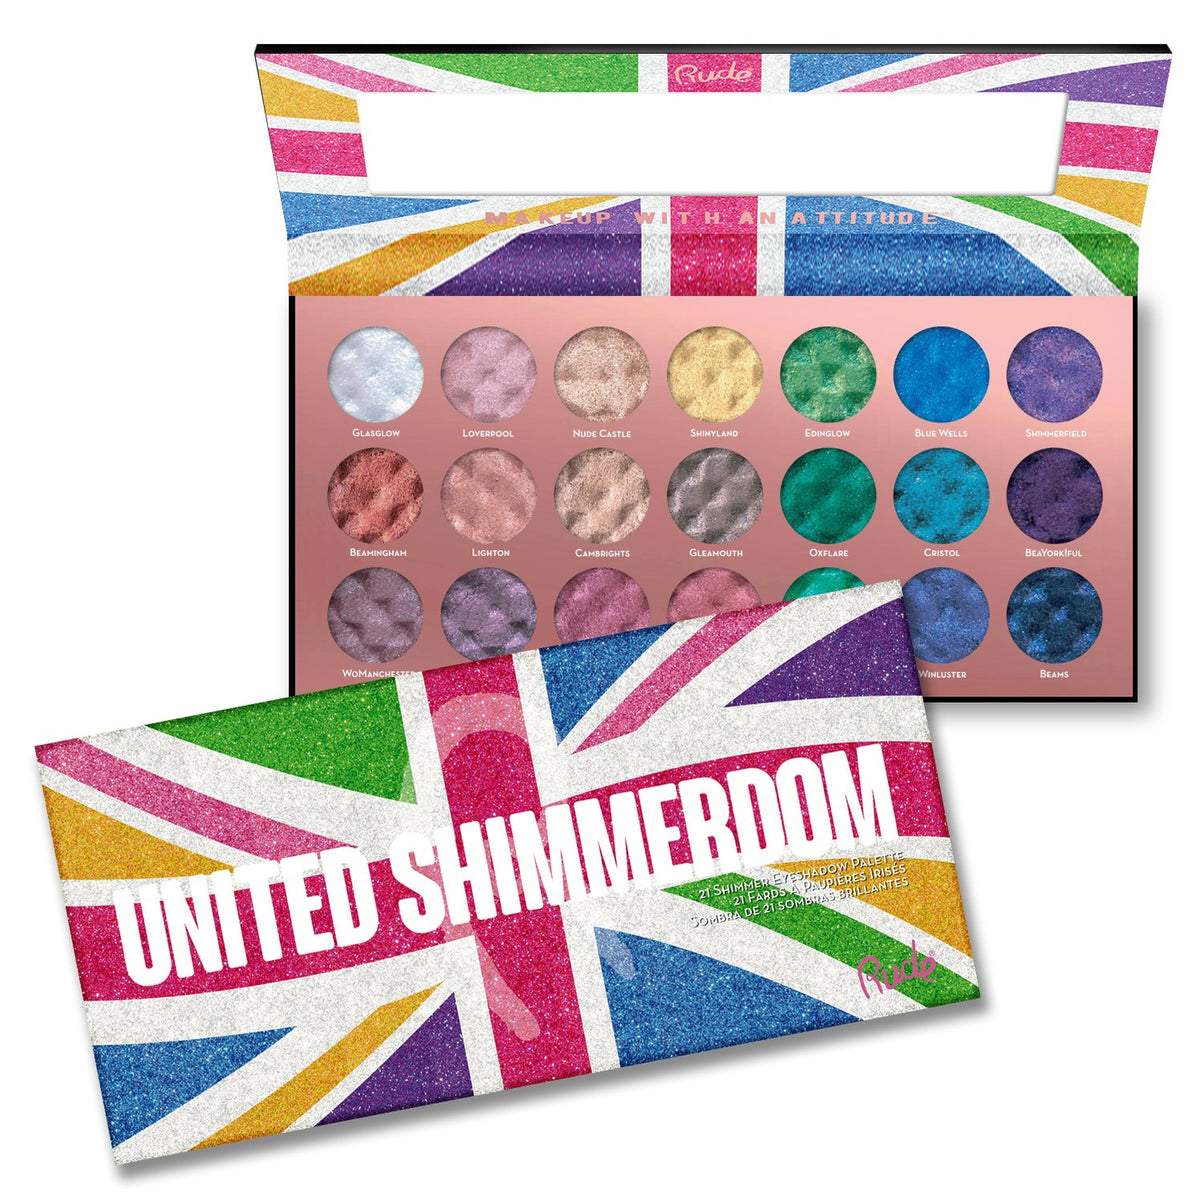 United Shimmerdom Shimmer Eyeshadow Palette Display Set, 12pcs